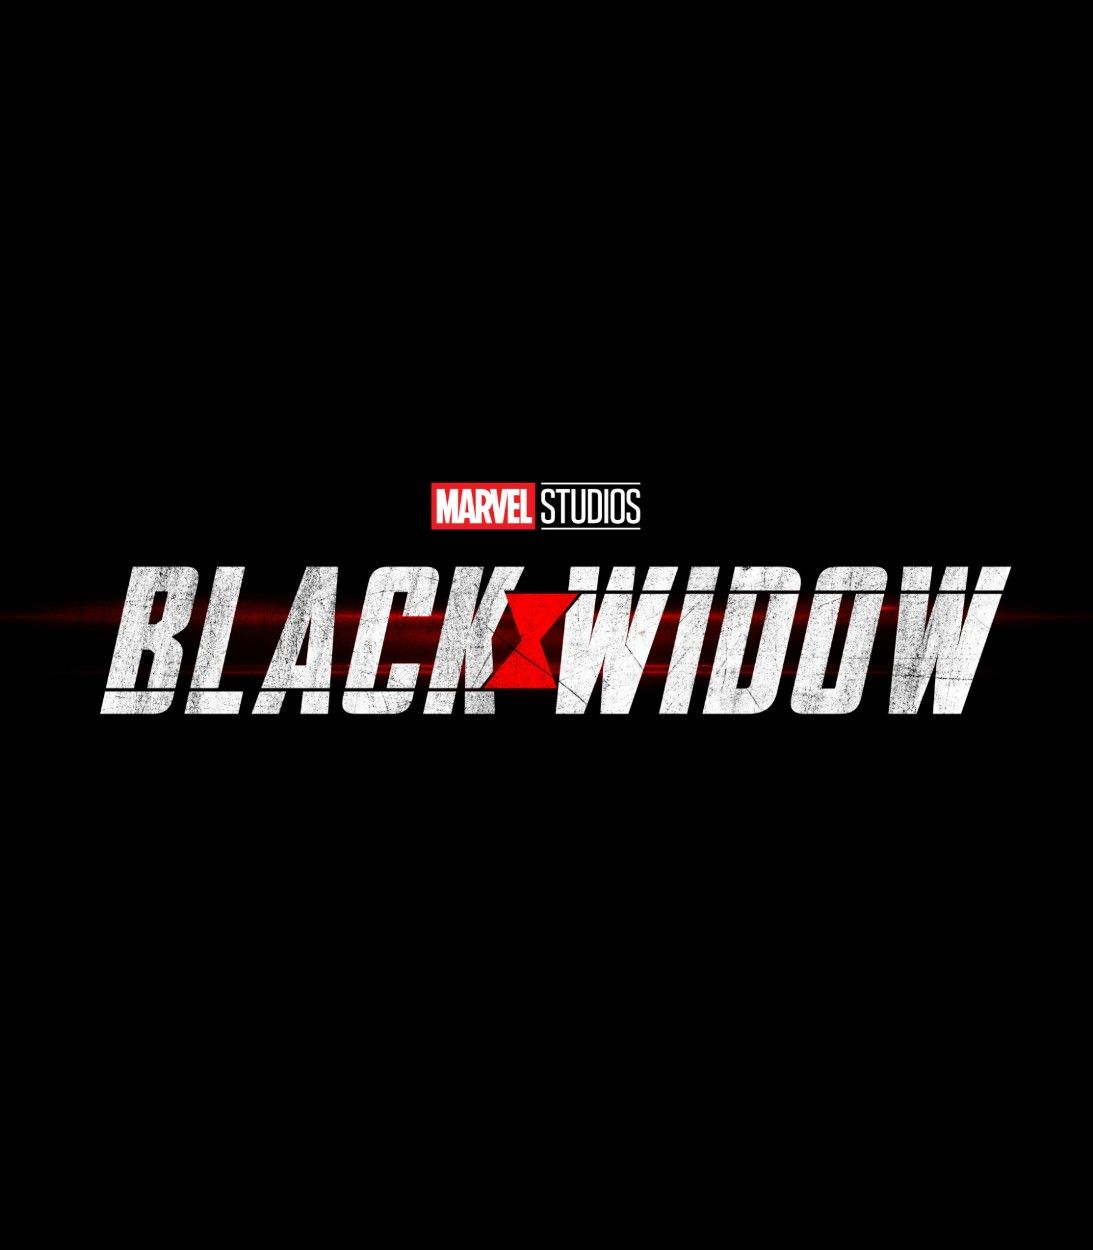 Black Widow movie logo Vertical